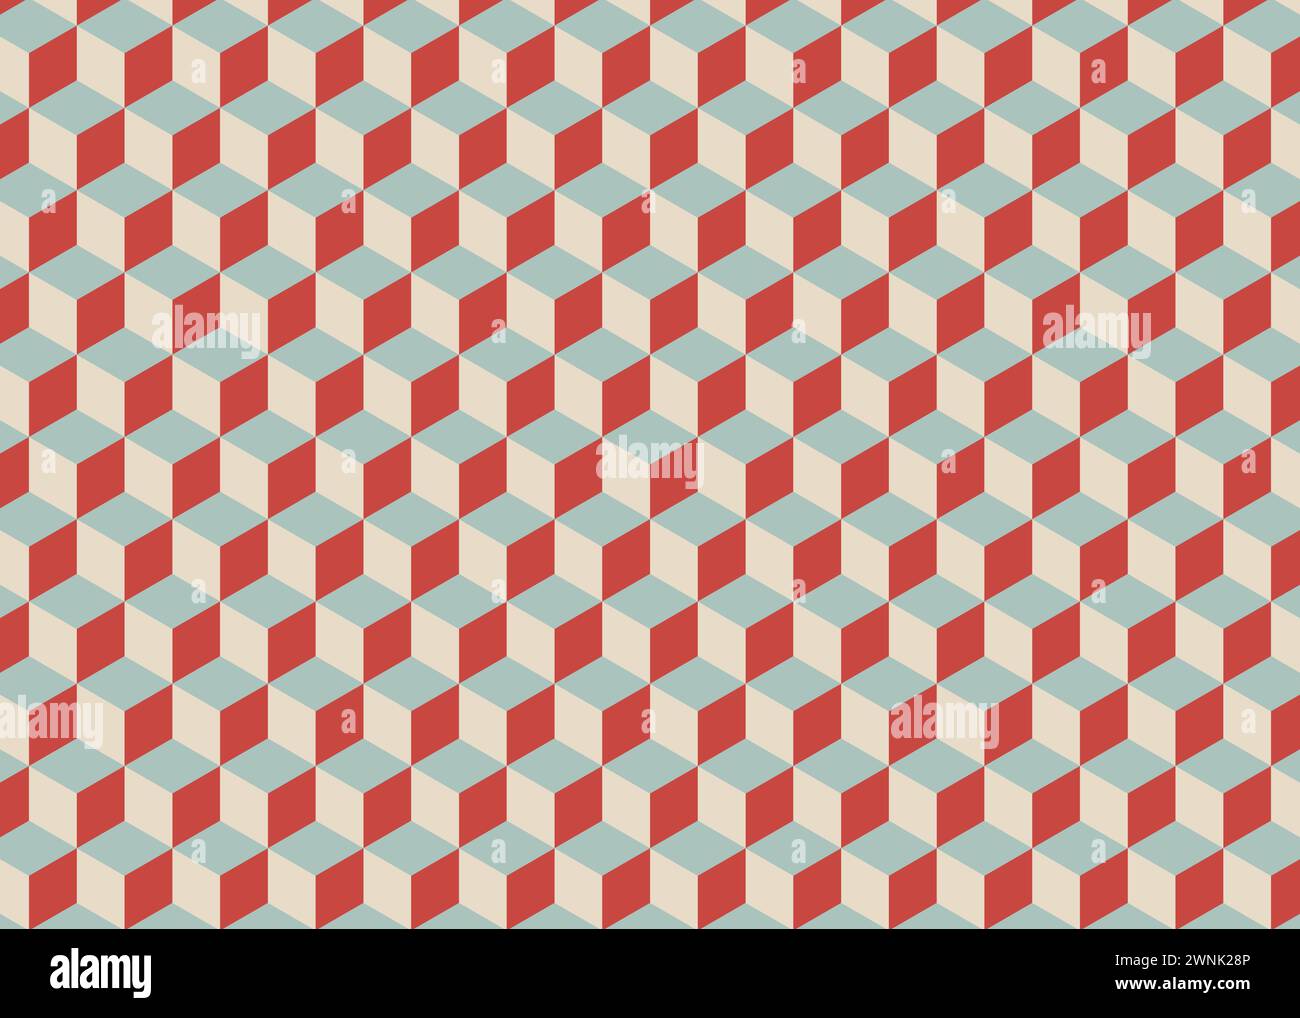 Abstraktes 3D-Retro-Cubes nahtloses Muster. Isometrische kubische Blöcke Struktur Vektor Hintergrund für Web mobile Schnittstelle oder Gewebe, Textildruck usag Stock Vektor